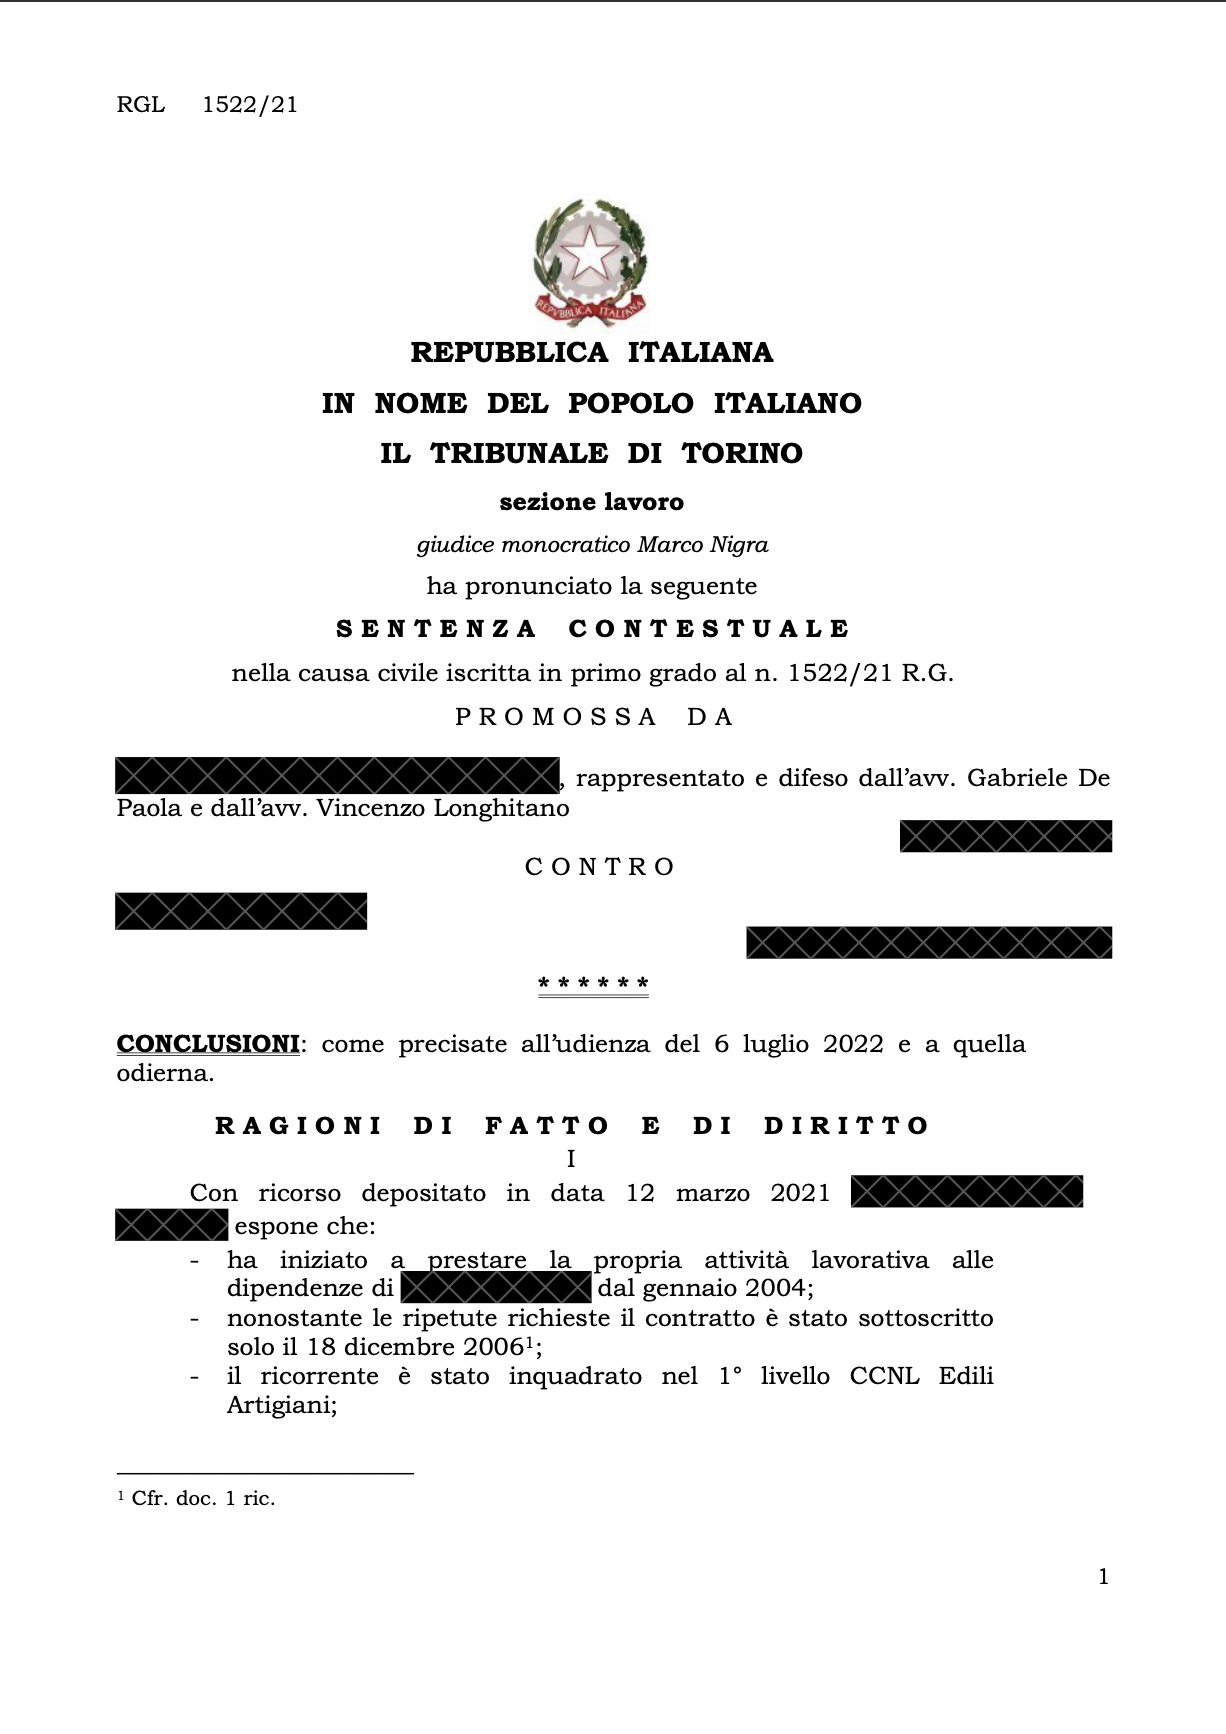 Setenza Tribunale Lavoro Torino pagina intestazione